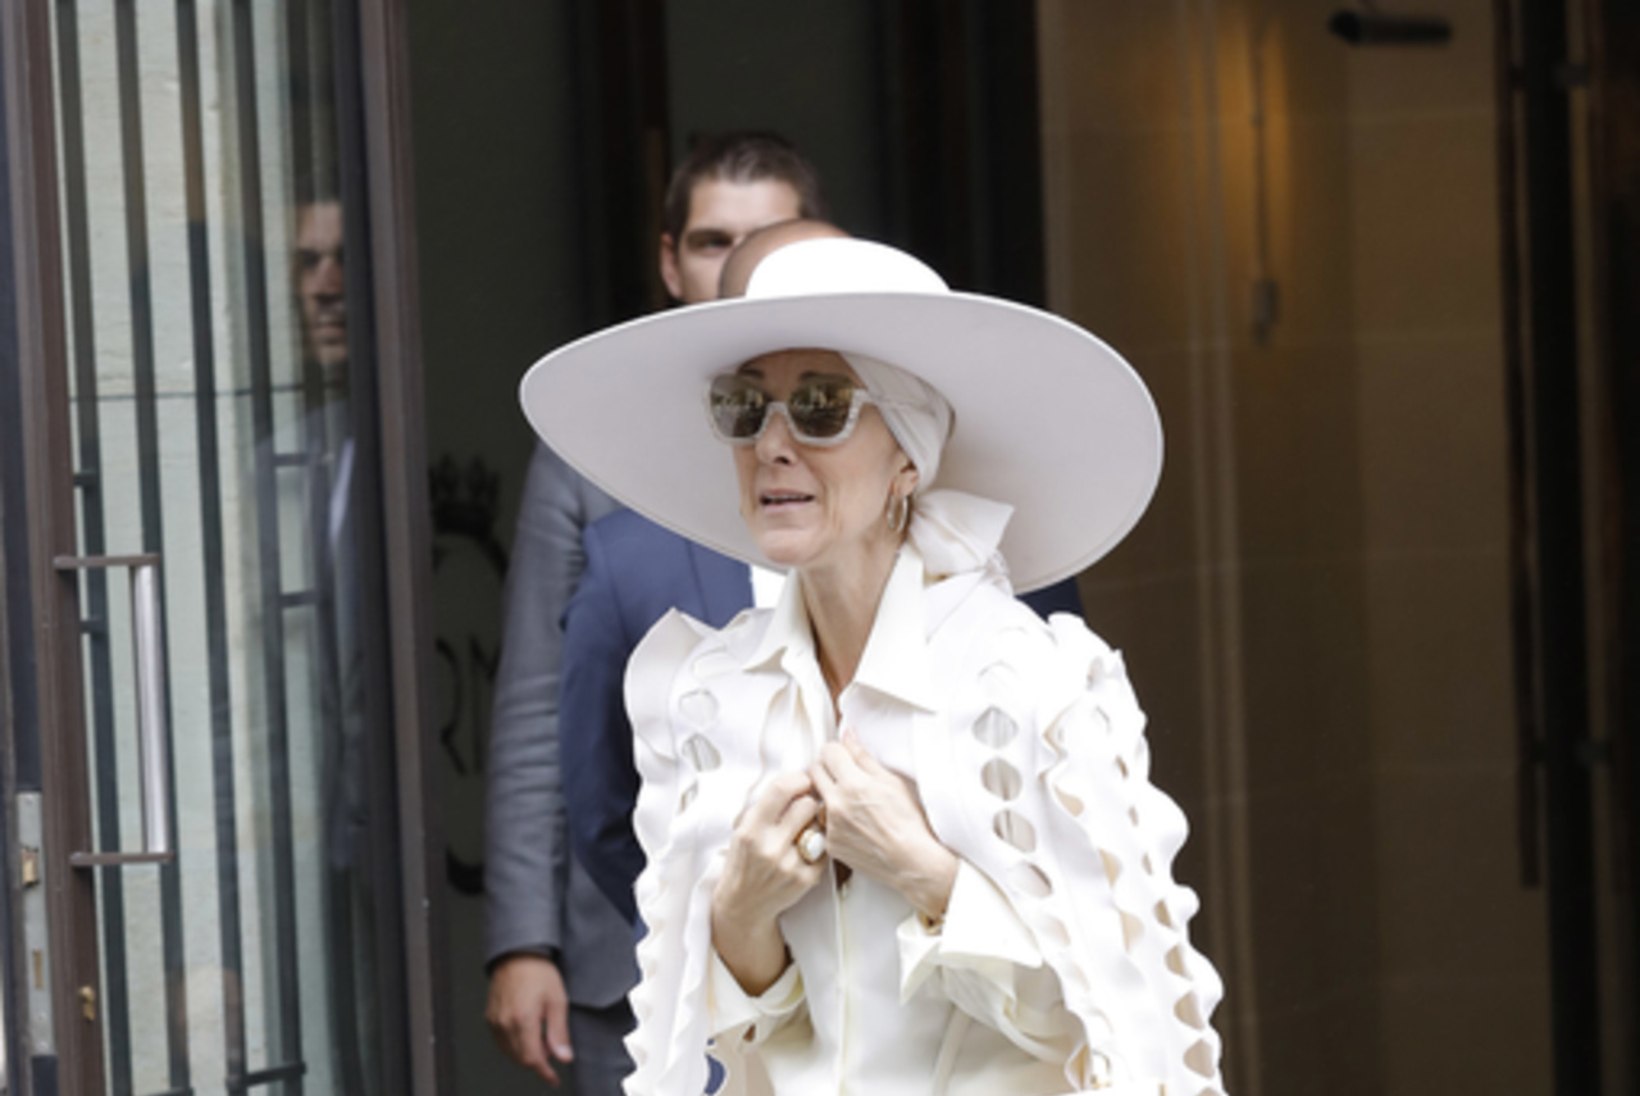 Ekspert: Céline Dioni riietus võib viidata psüühilistele probleemidele